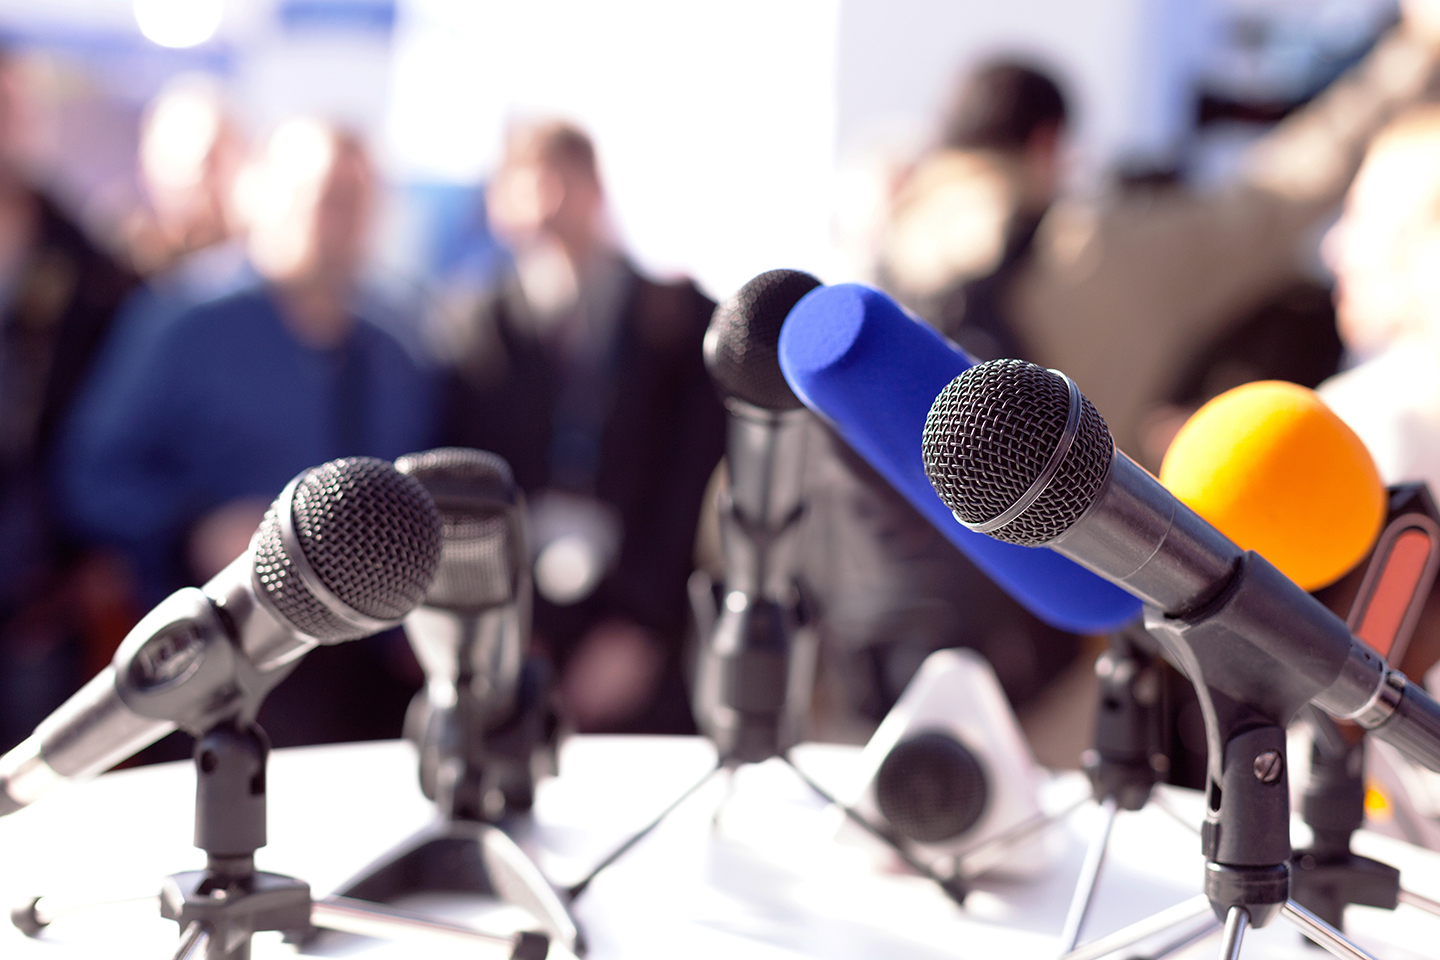 Startbild: Foto von mehreren Mikrofonen im Vordergrund, im Hintergrund unscharf Journalisten bei einer Pressekonferenz